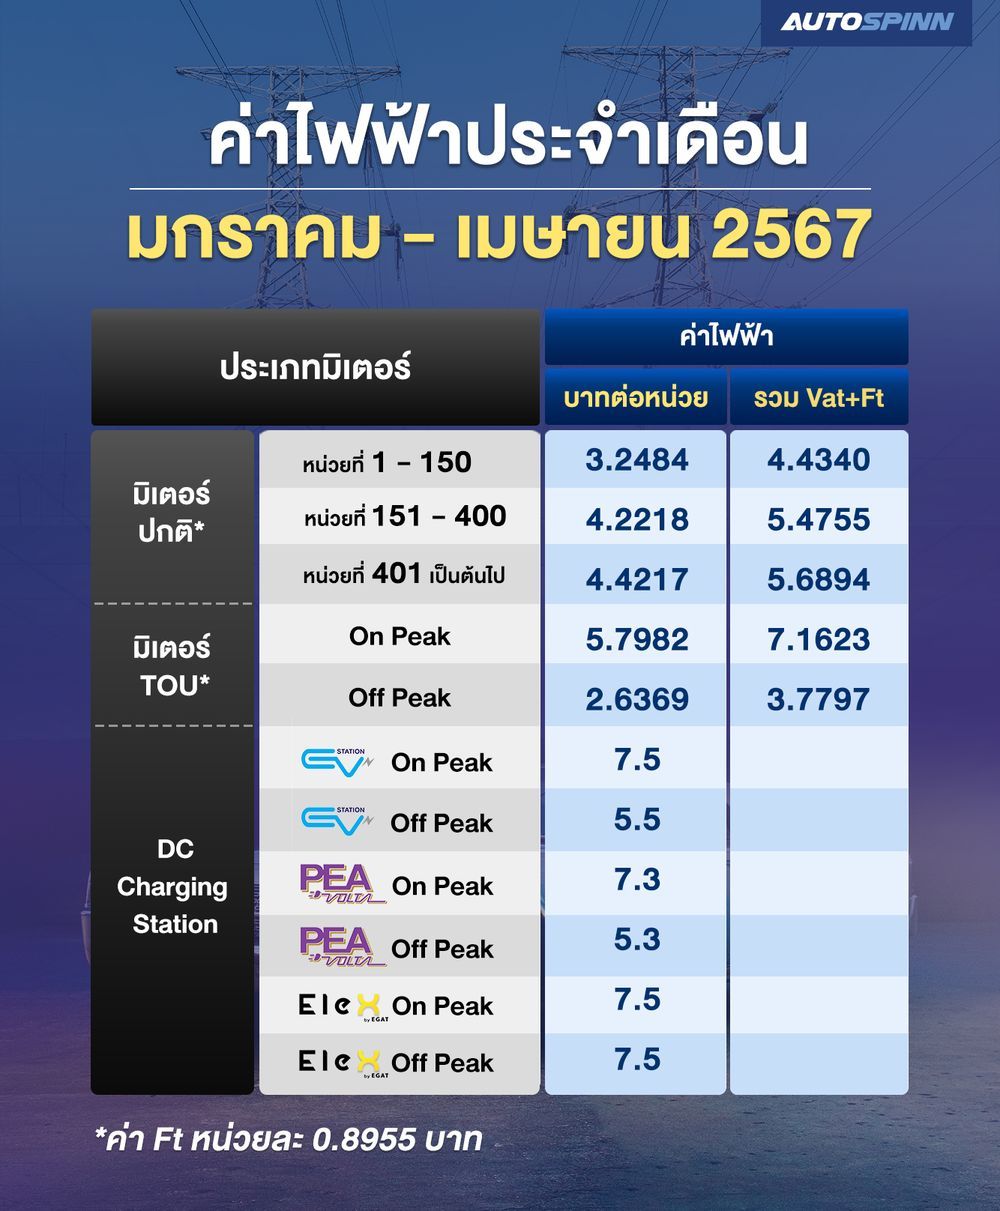 Brief Thai economic news